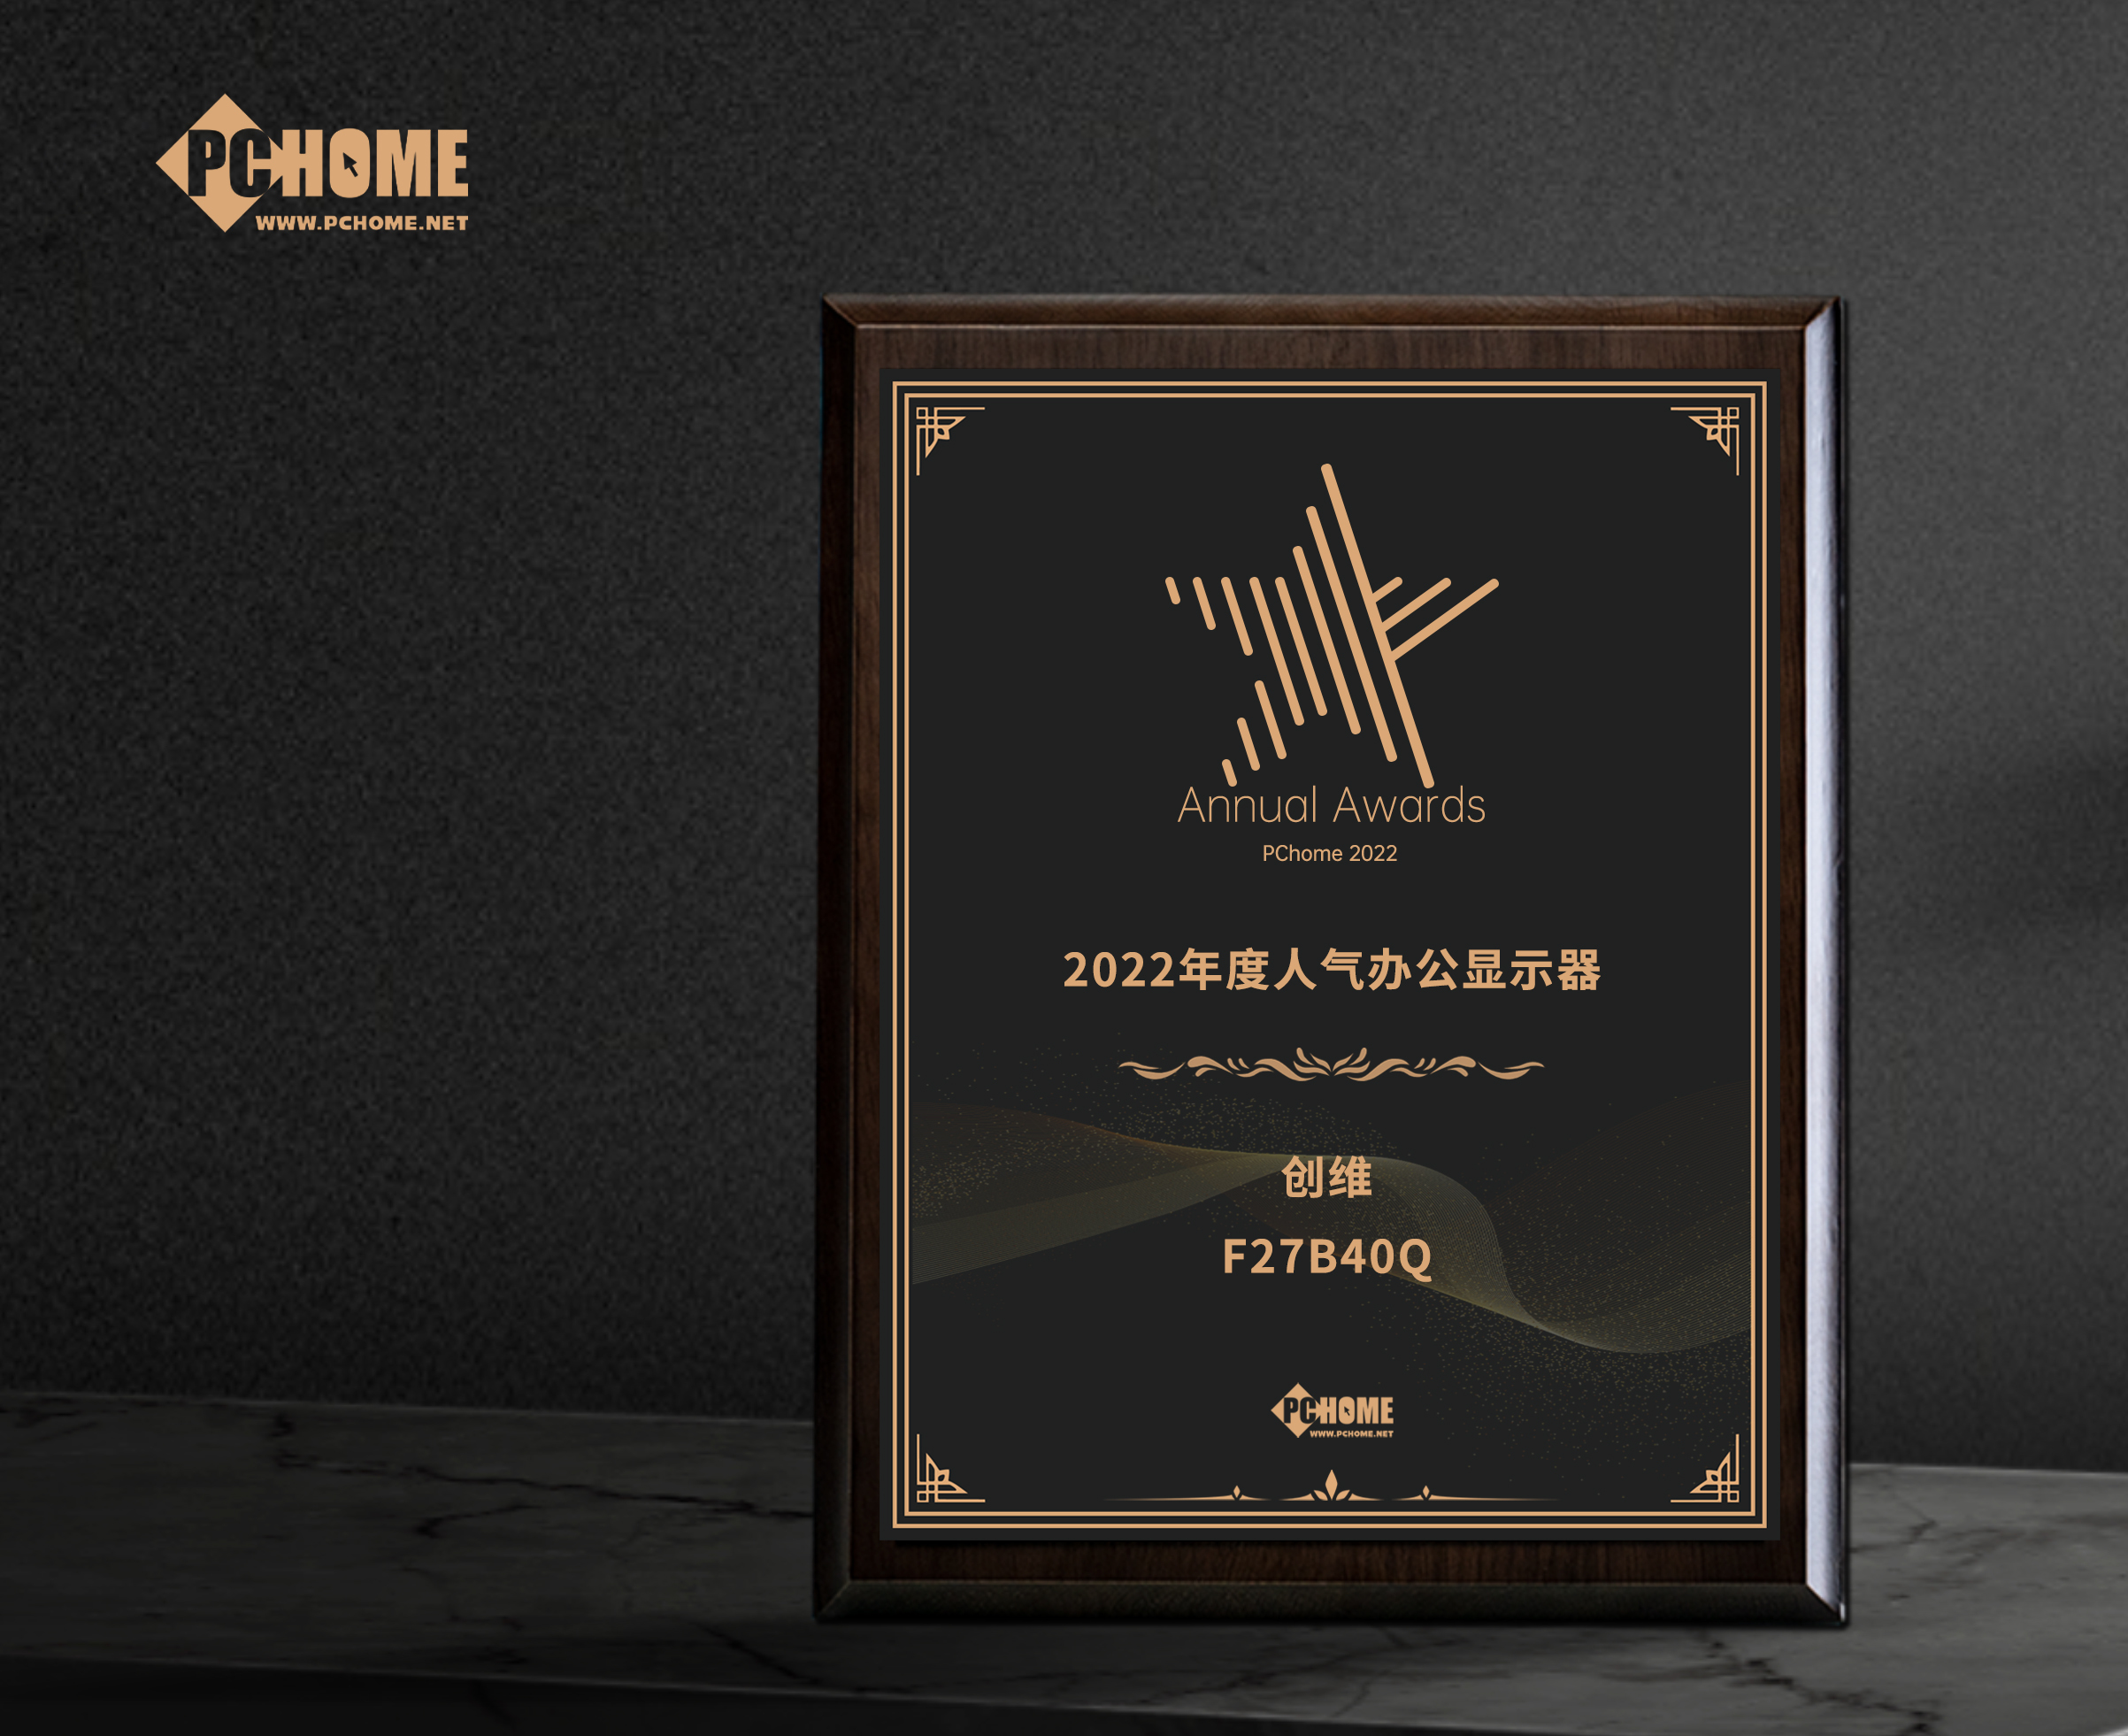 貴港市創維F27B40Q獲得PChome2022年度人氣辦公顯示器獎項